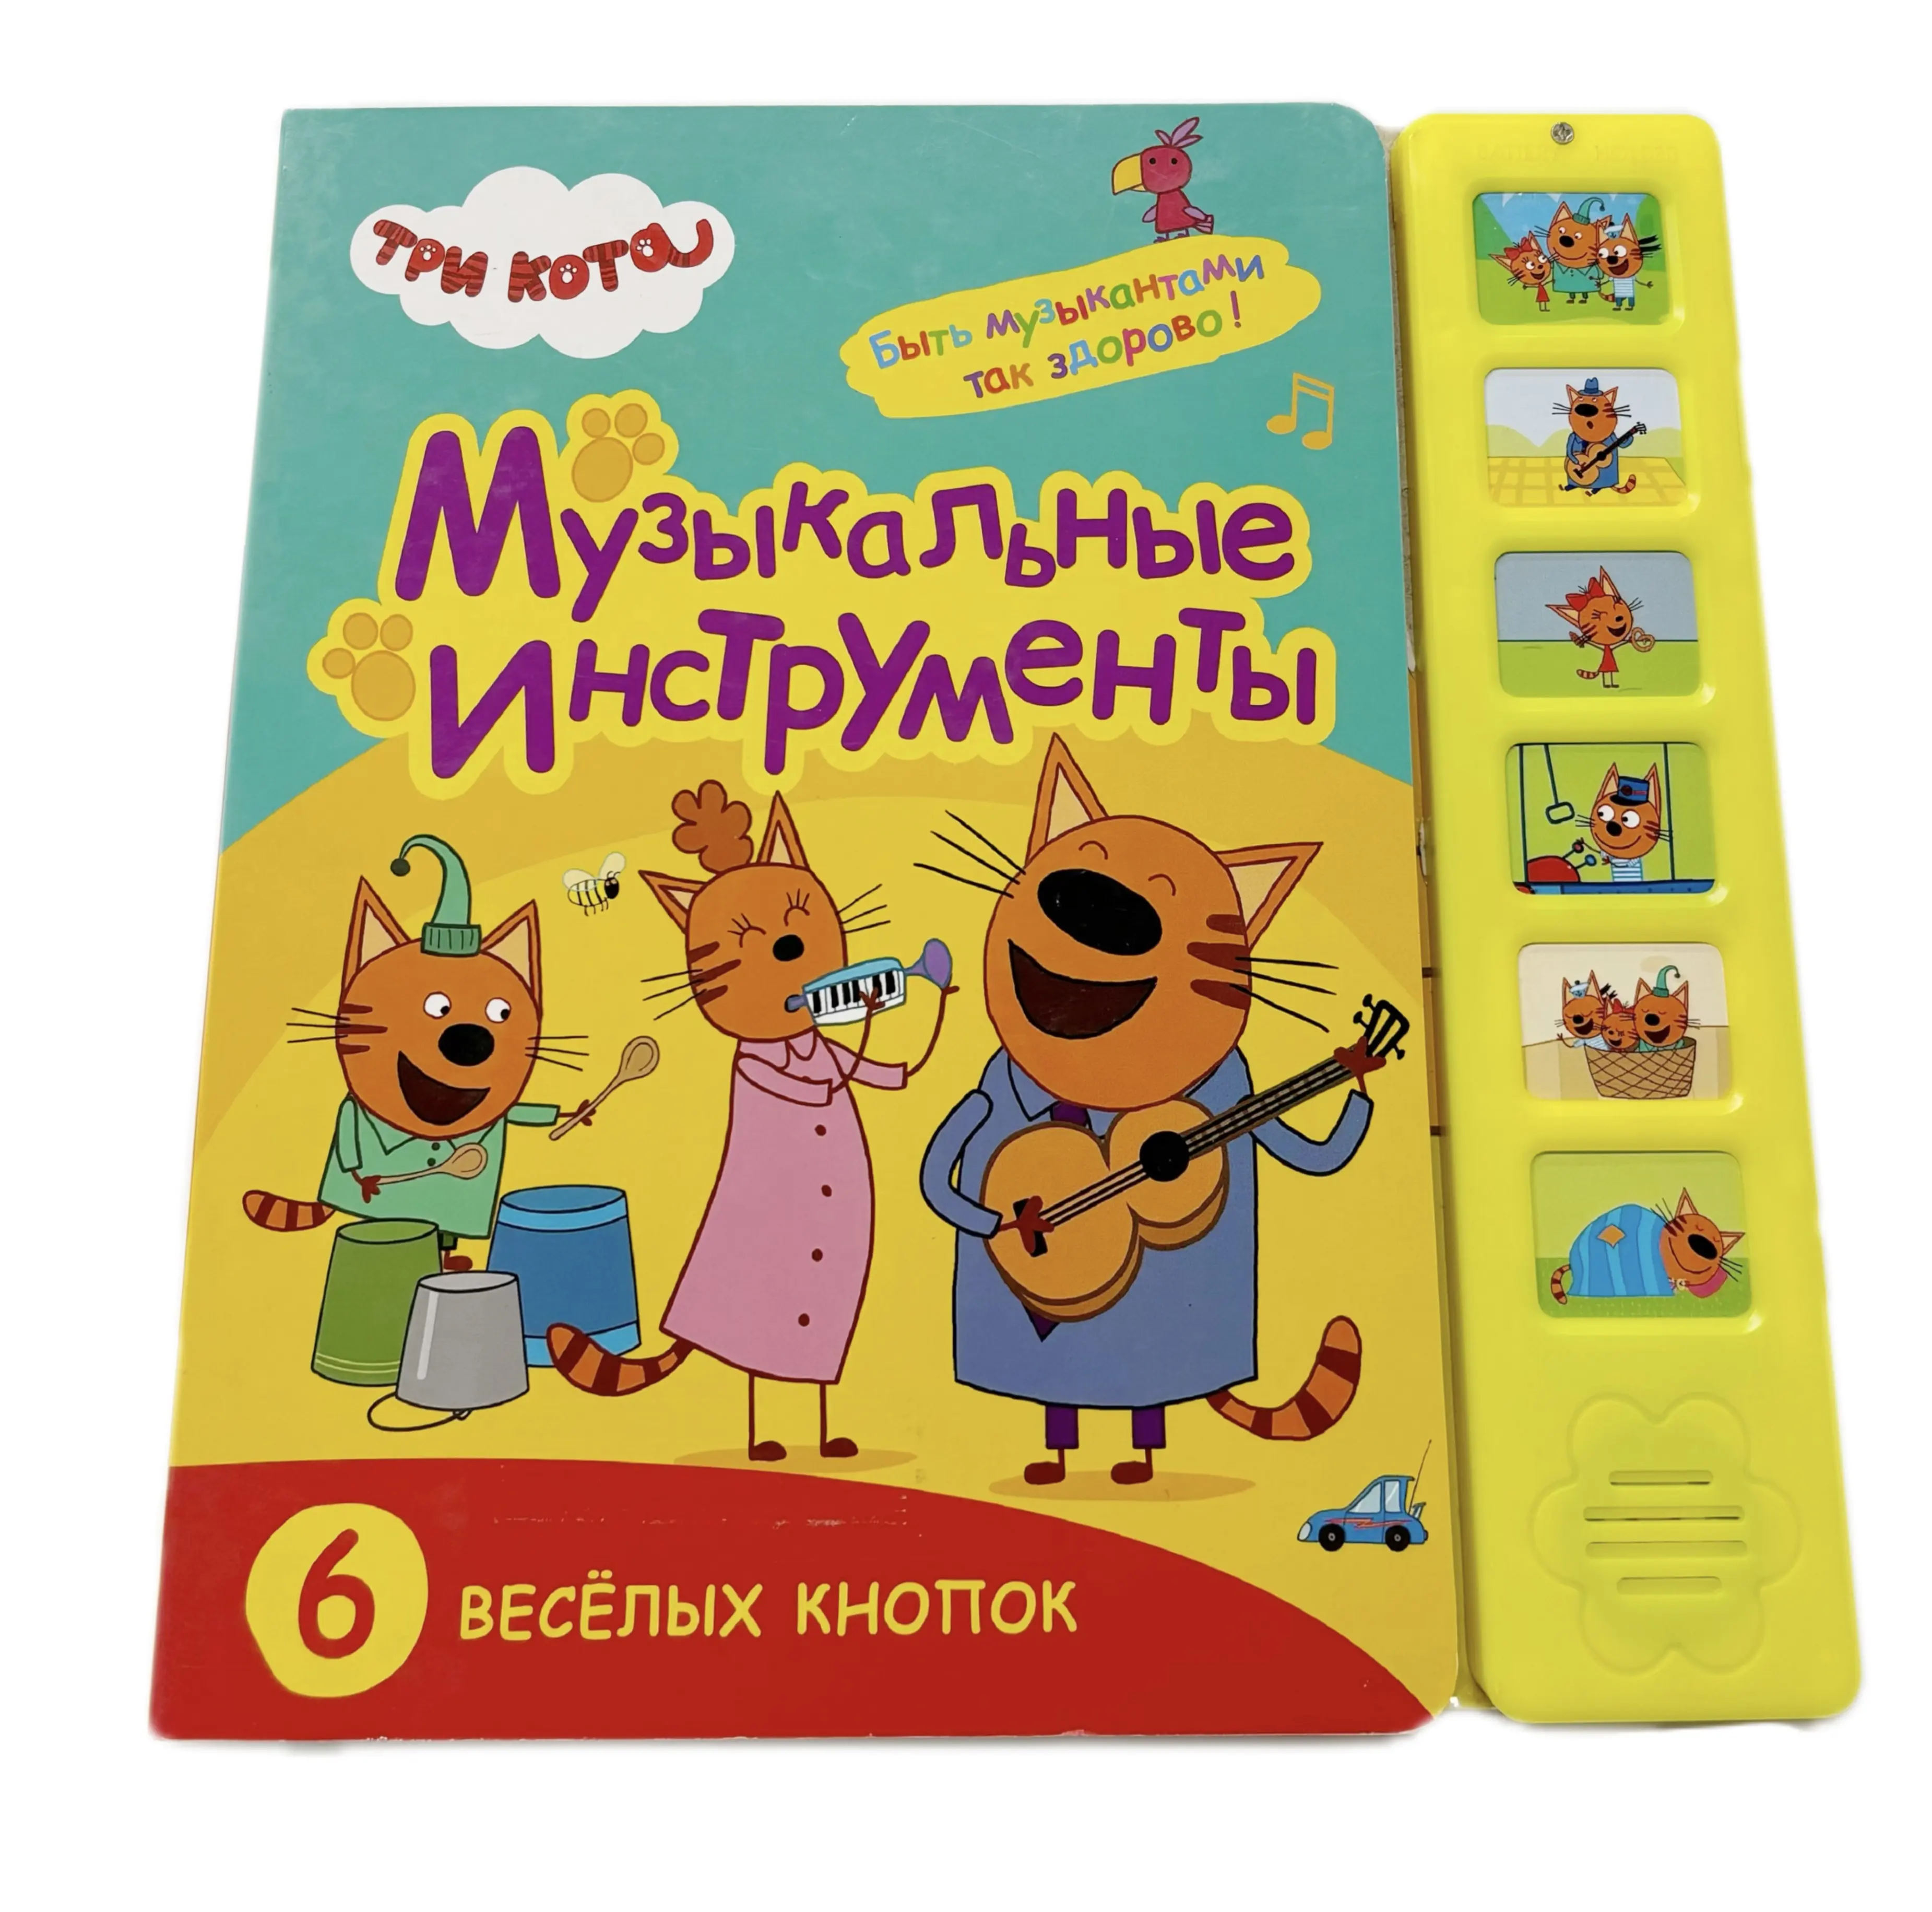 النسخة الروسية من الكتاب الصوتي للتعلم المبكر الذي يحتوي على 6 أزرار للأطفال كتاب بصوتي من البلاستيك الذي يتميز بأزرار وخدمة الطباعة على الكتاب الصوتي